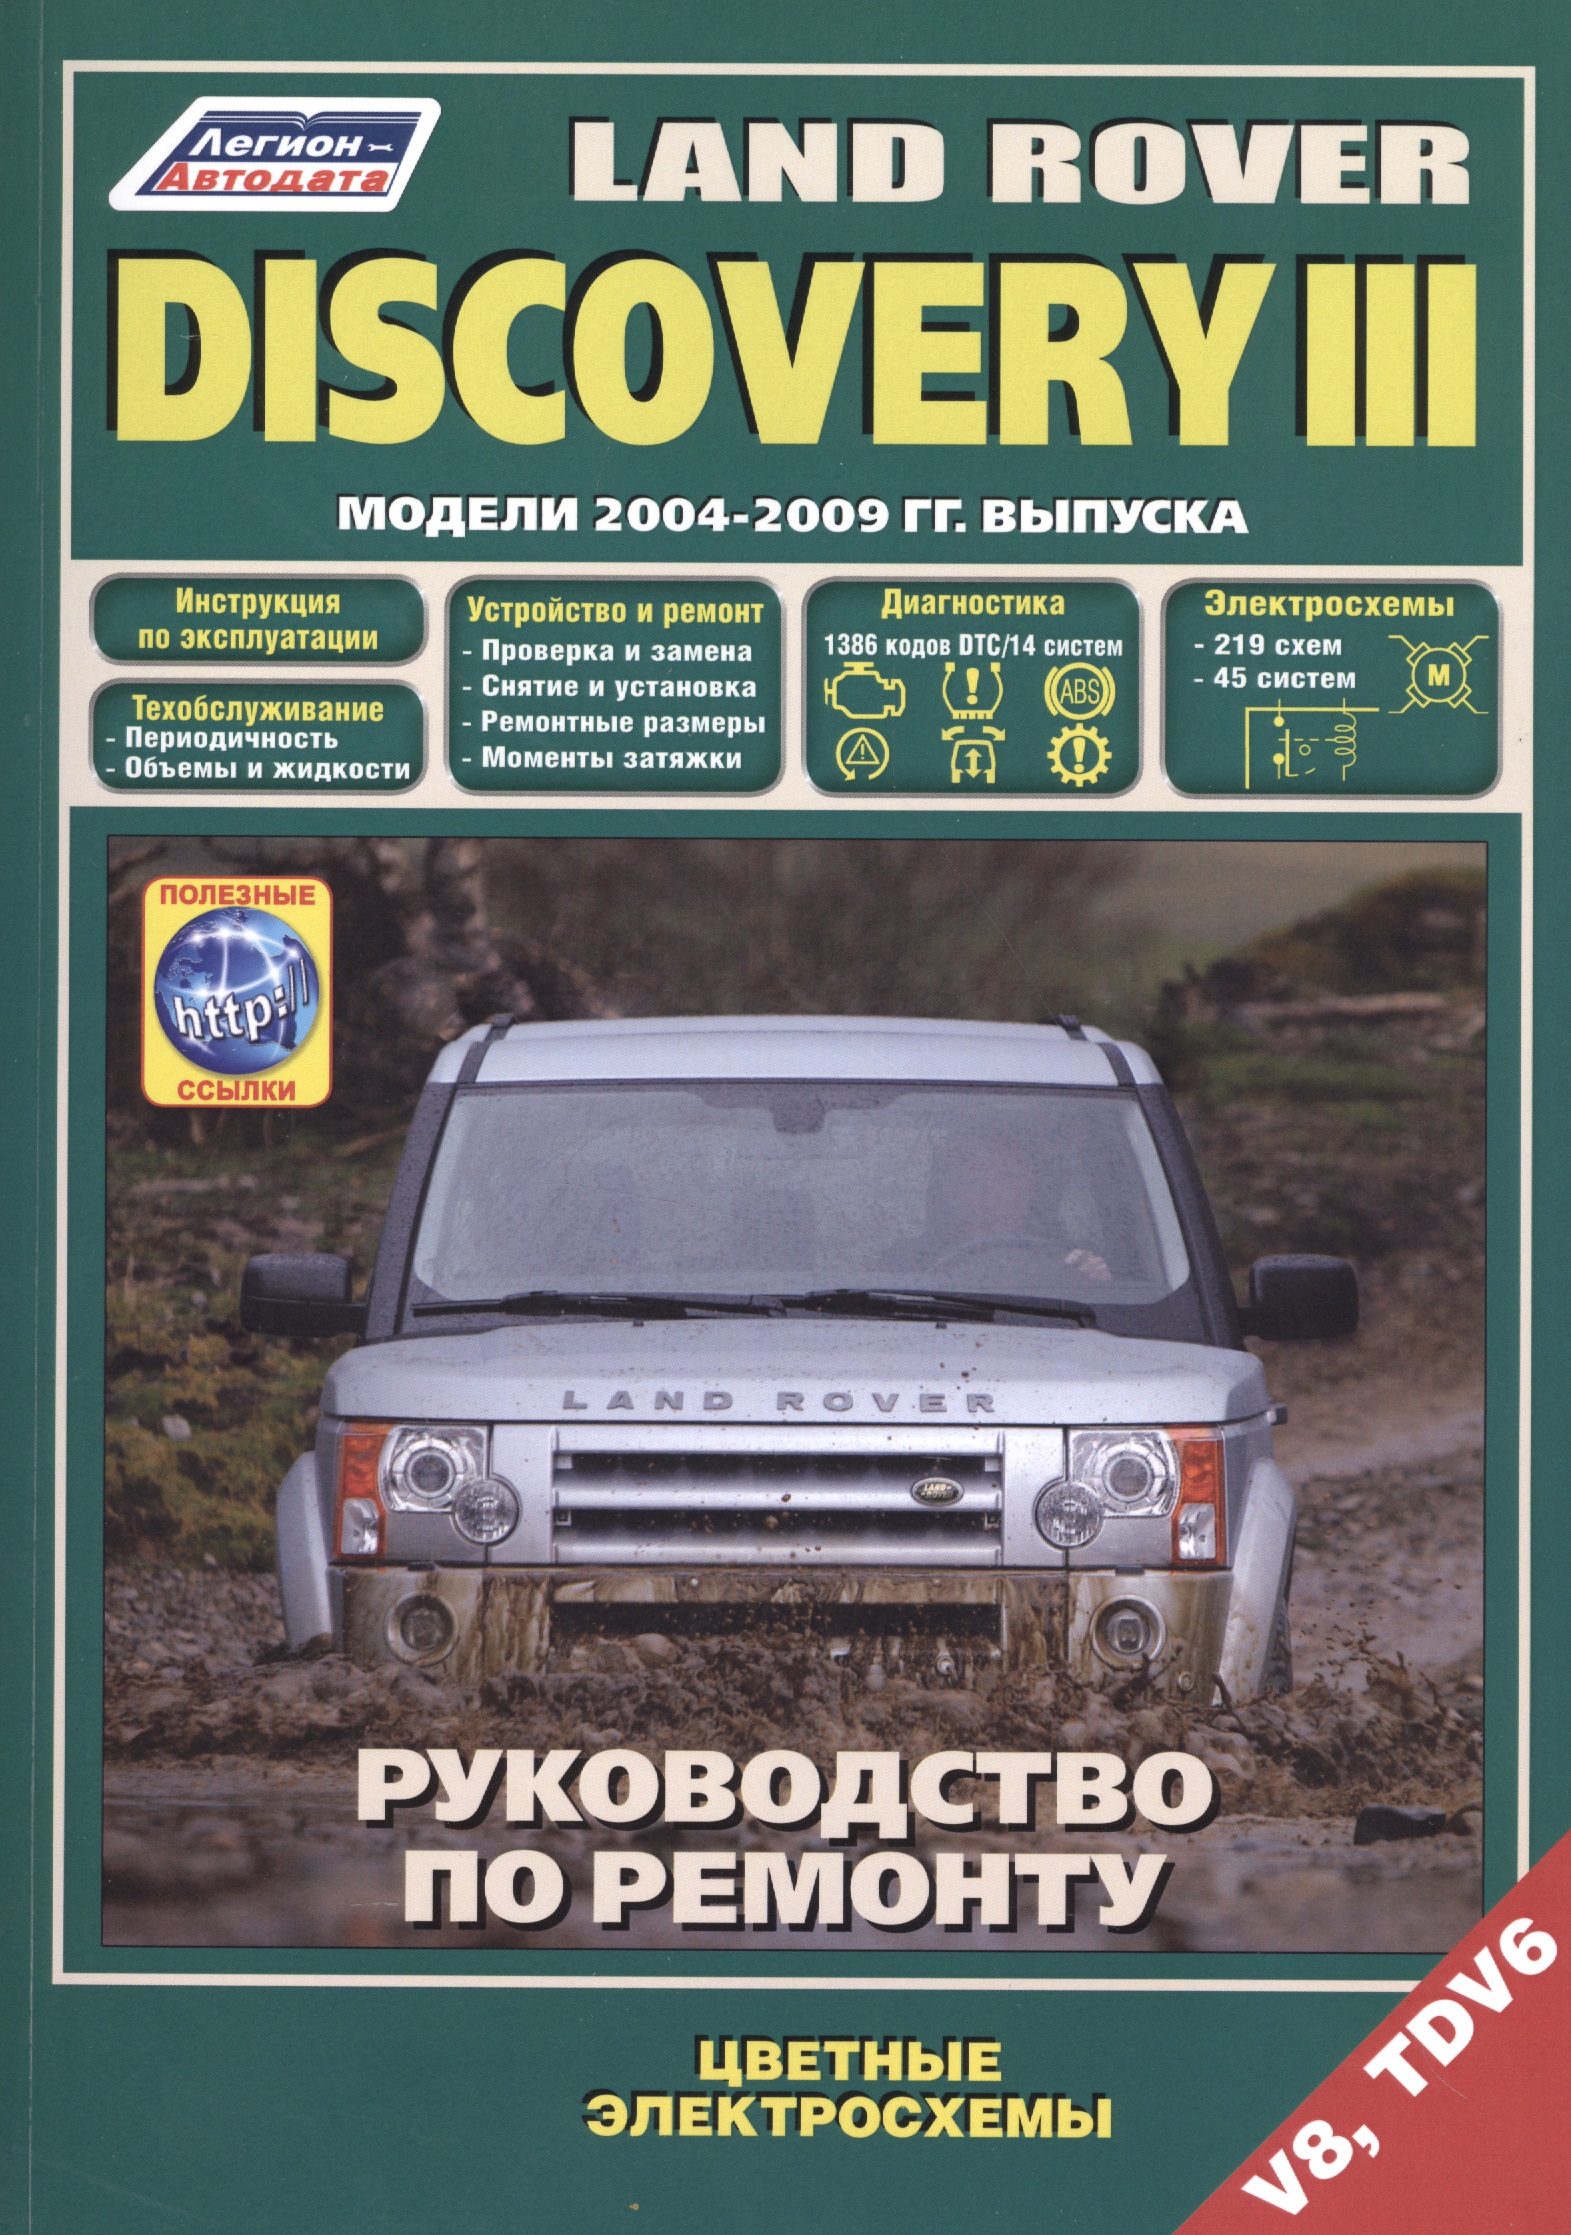 Land Rover Discovery III. Модели 2004-2009 гг. выпуска с бензиновым V8 (4,4 л.) и дизельным TDV6 (2,7 л.) двигателями. Руководство по ремонту и техническому обслуживанию (+ полезные ссылки)